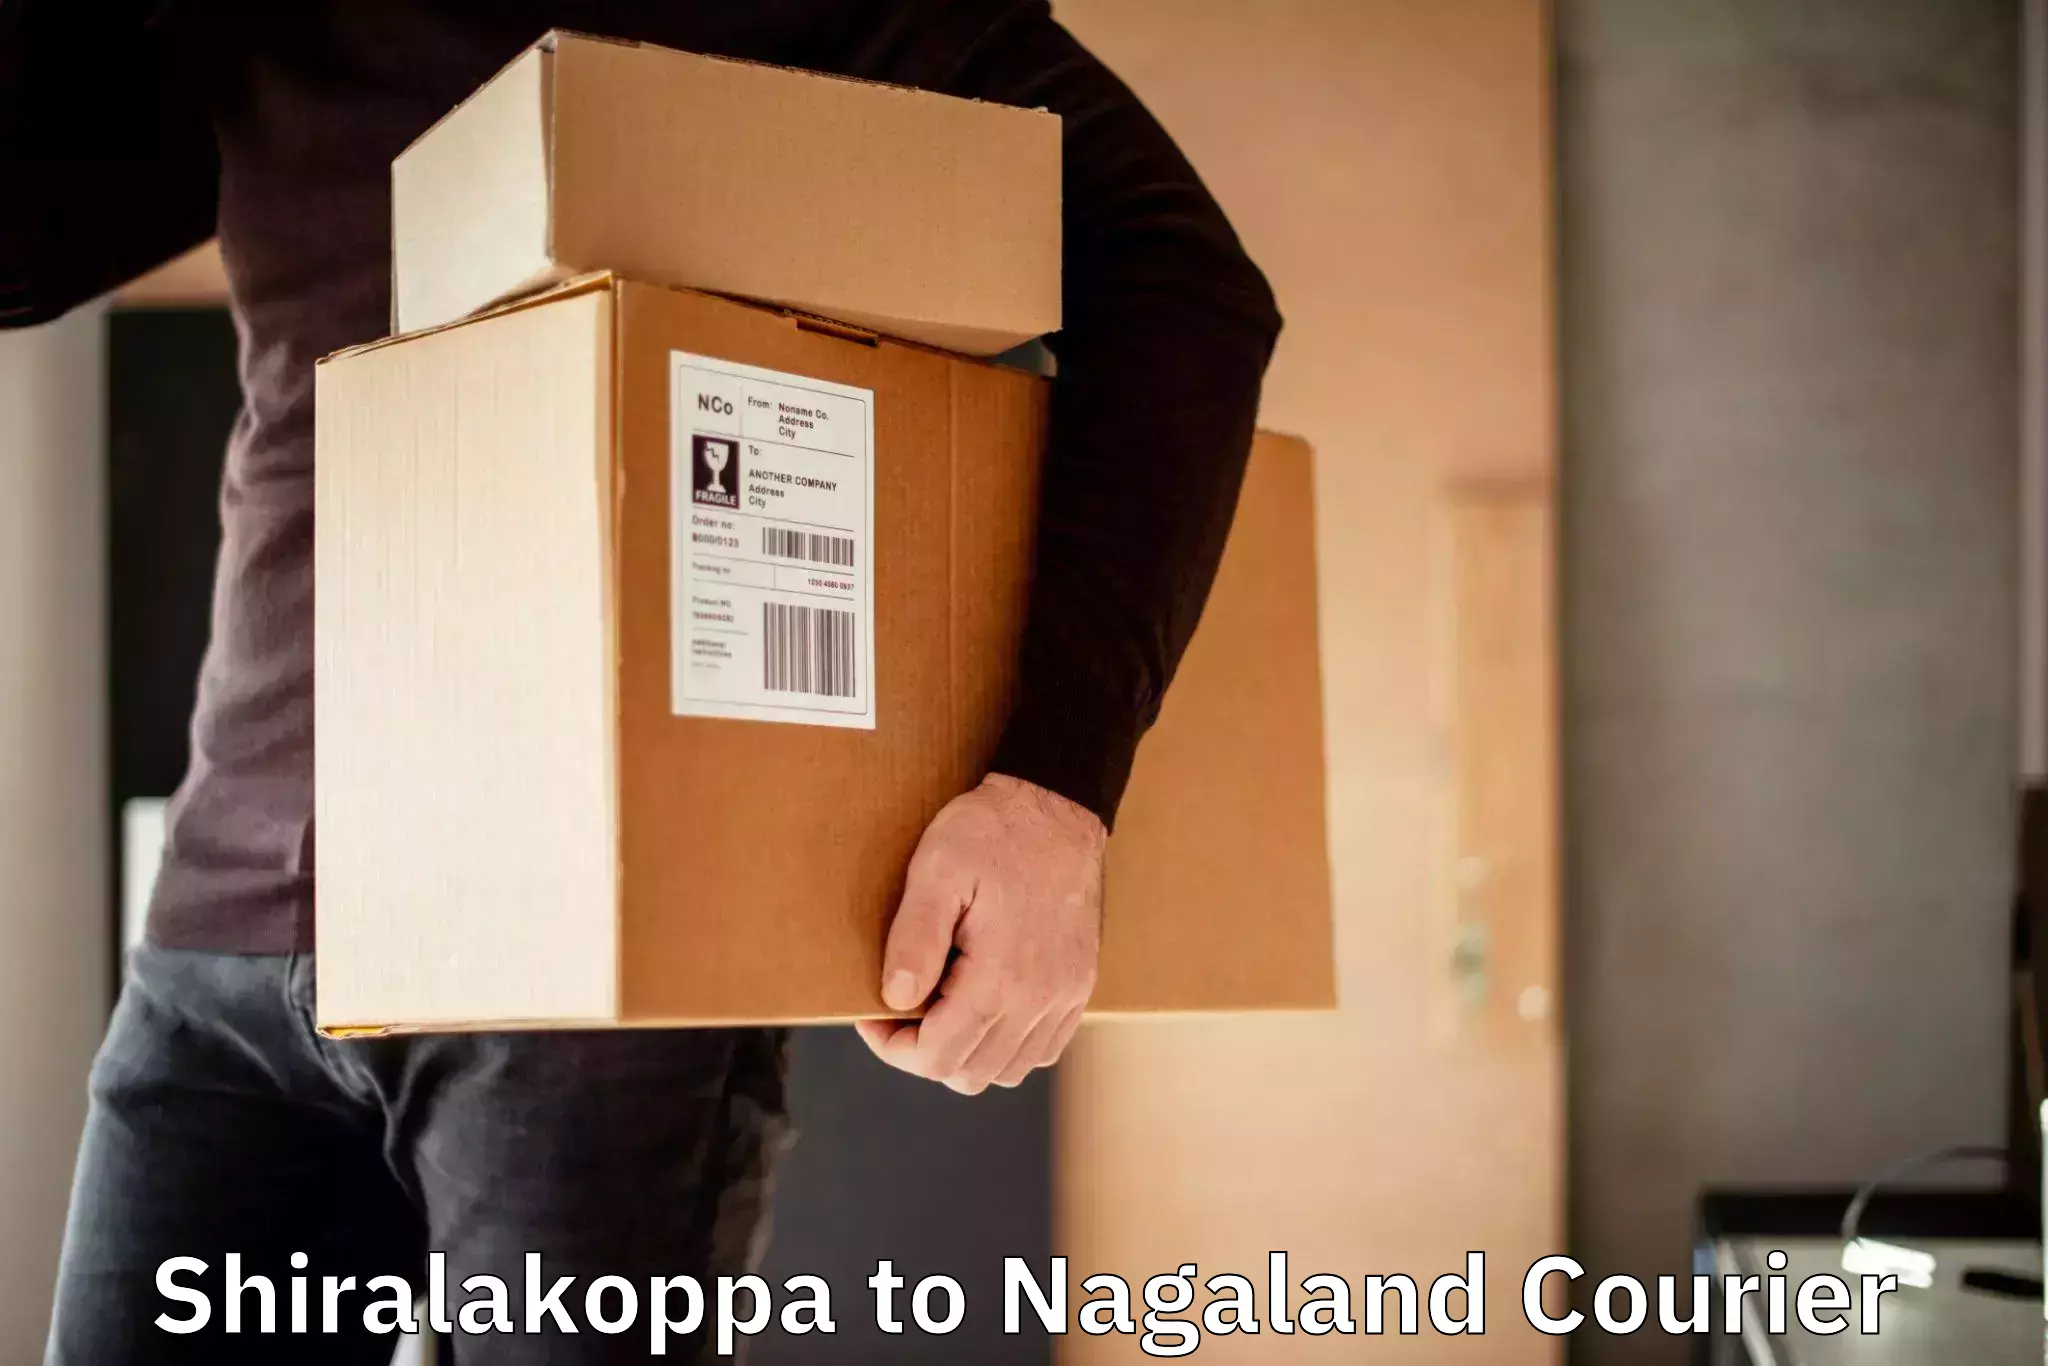 Fast shipping solutions Shiralakoppa to NIT Nagaland